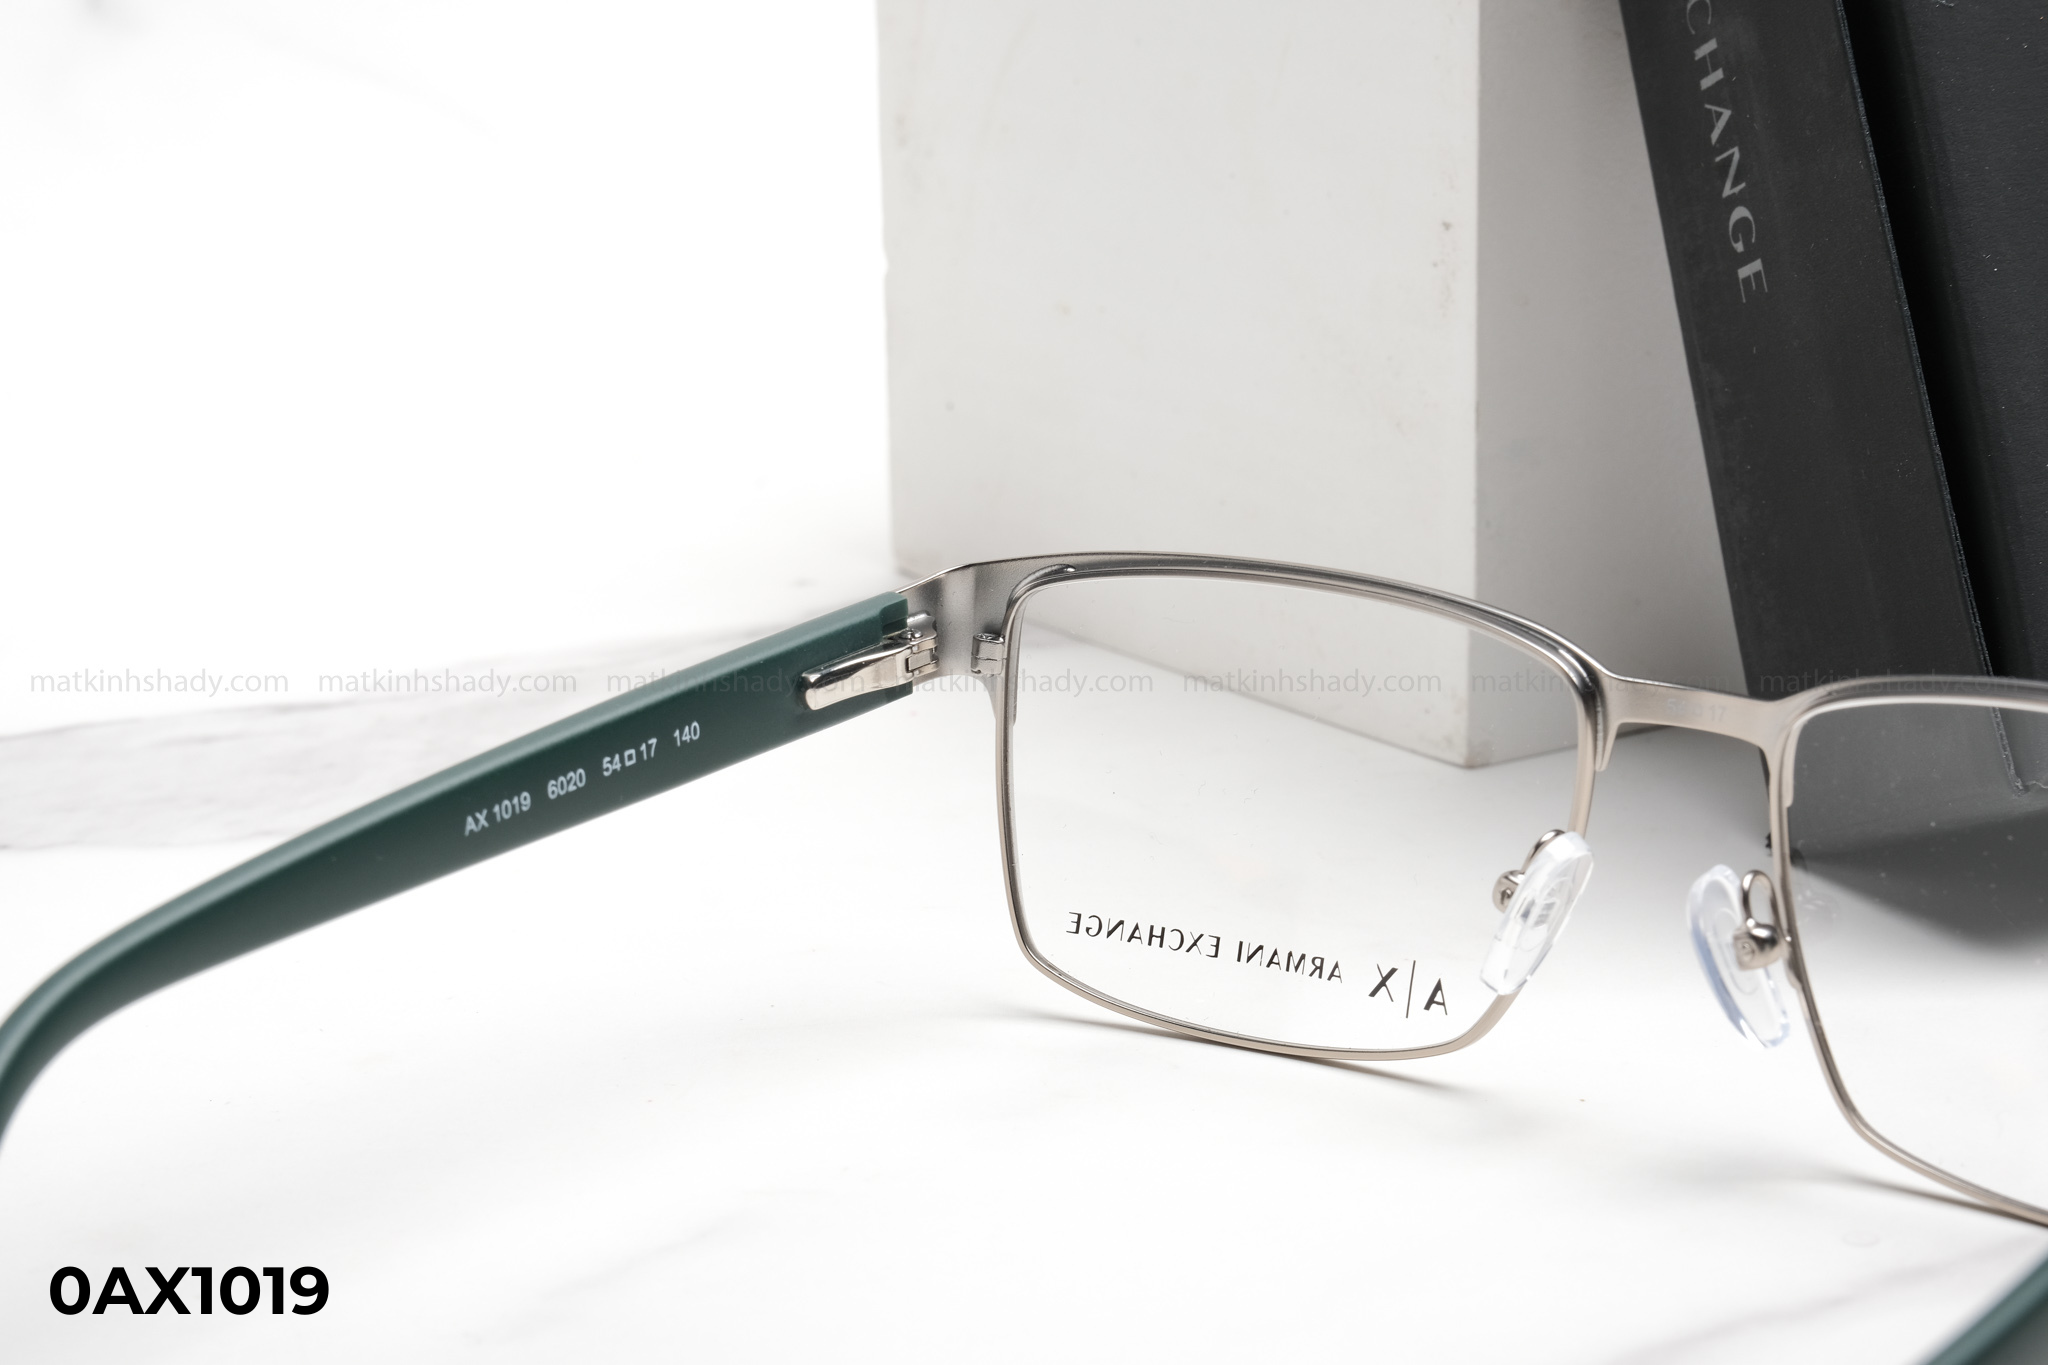  Armani Exchange Eyewear - Glasses - 0AX1019 